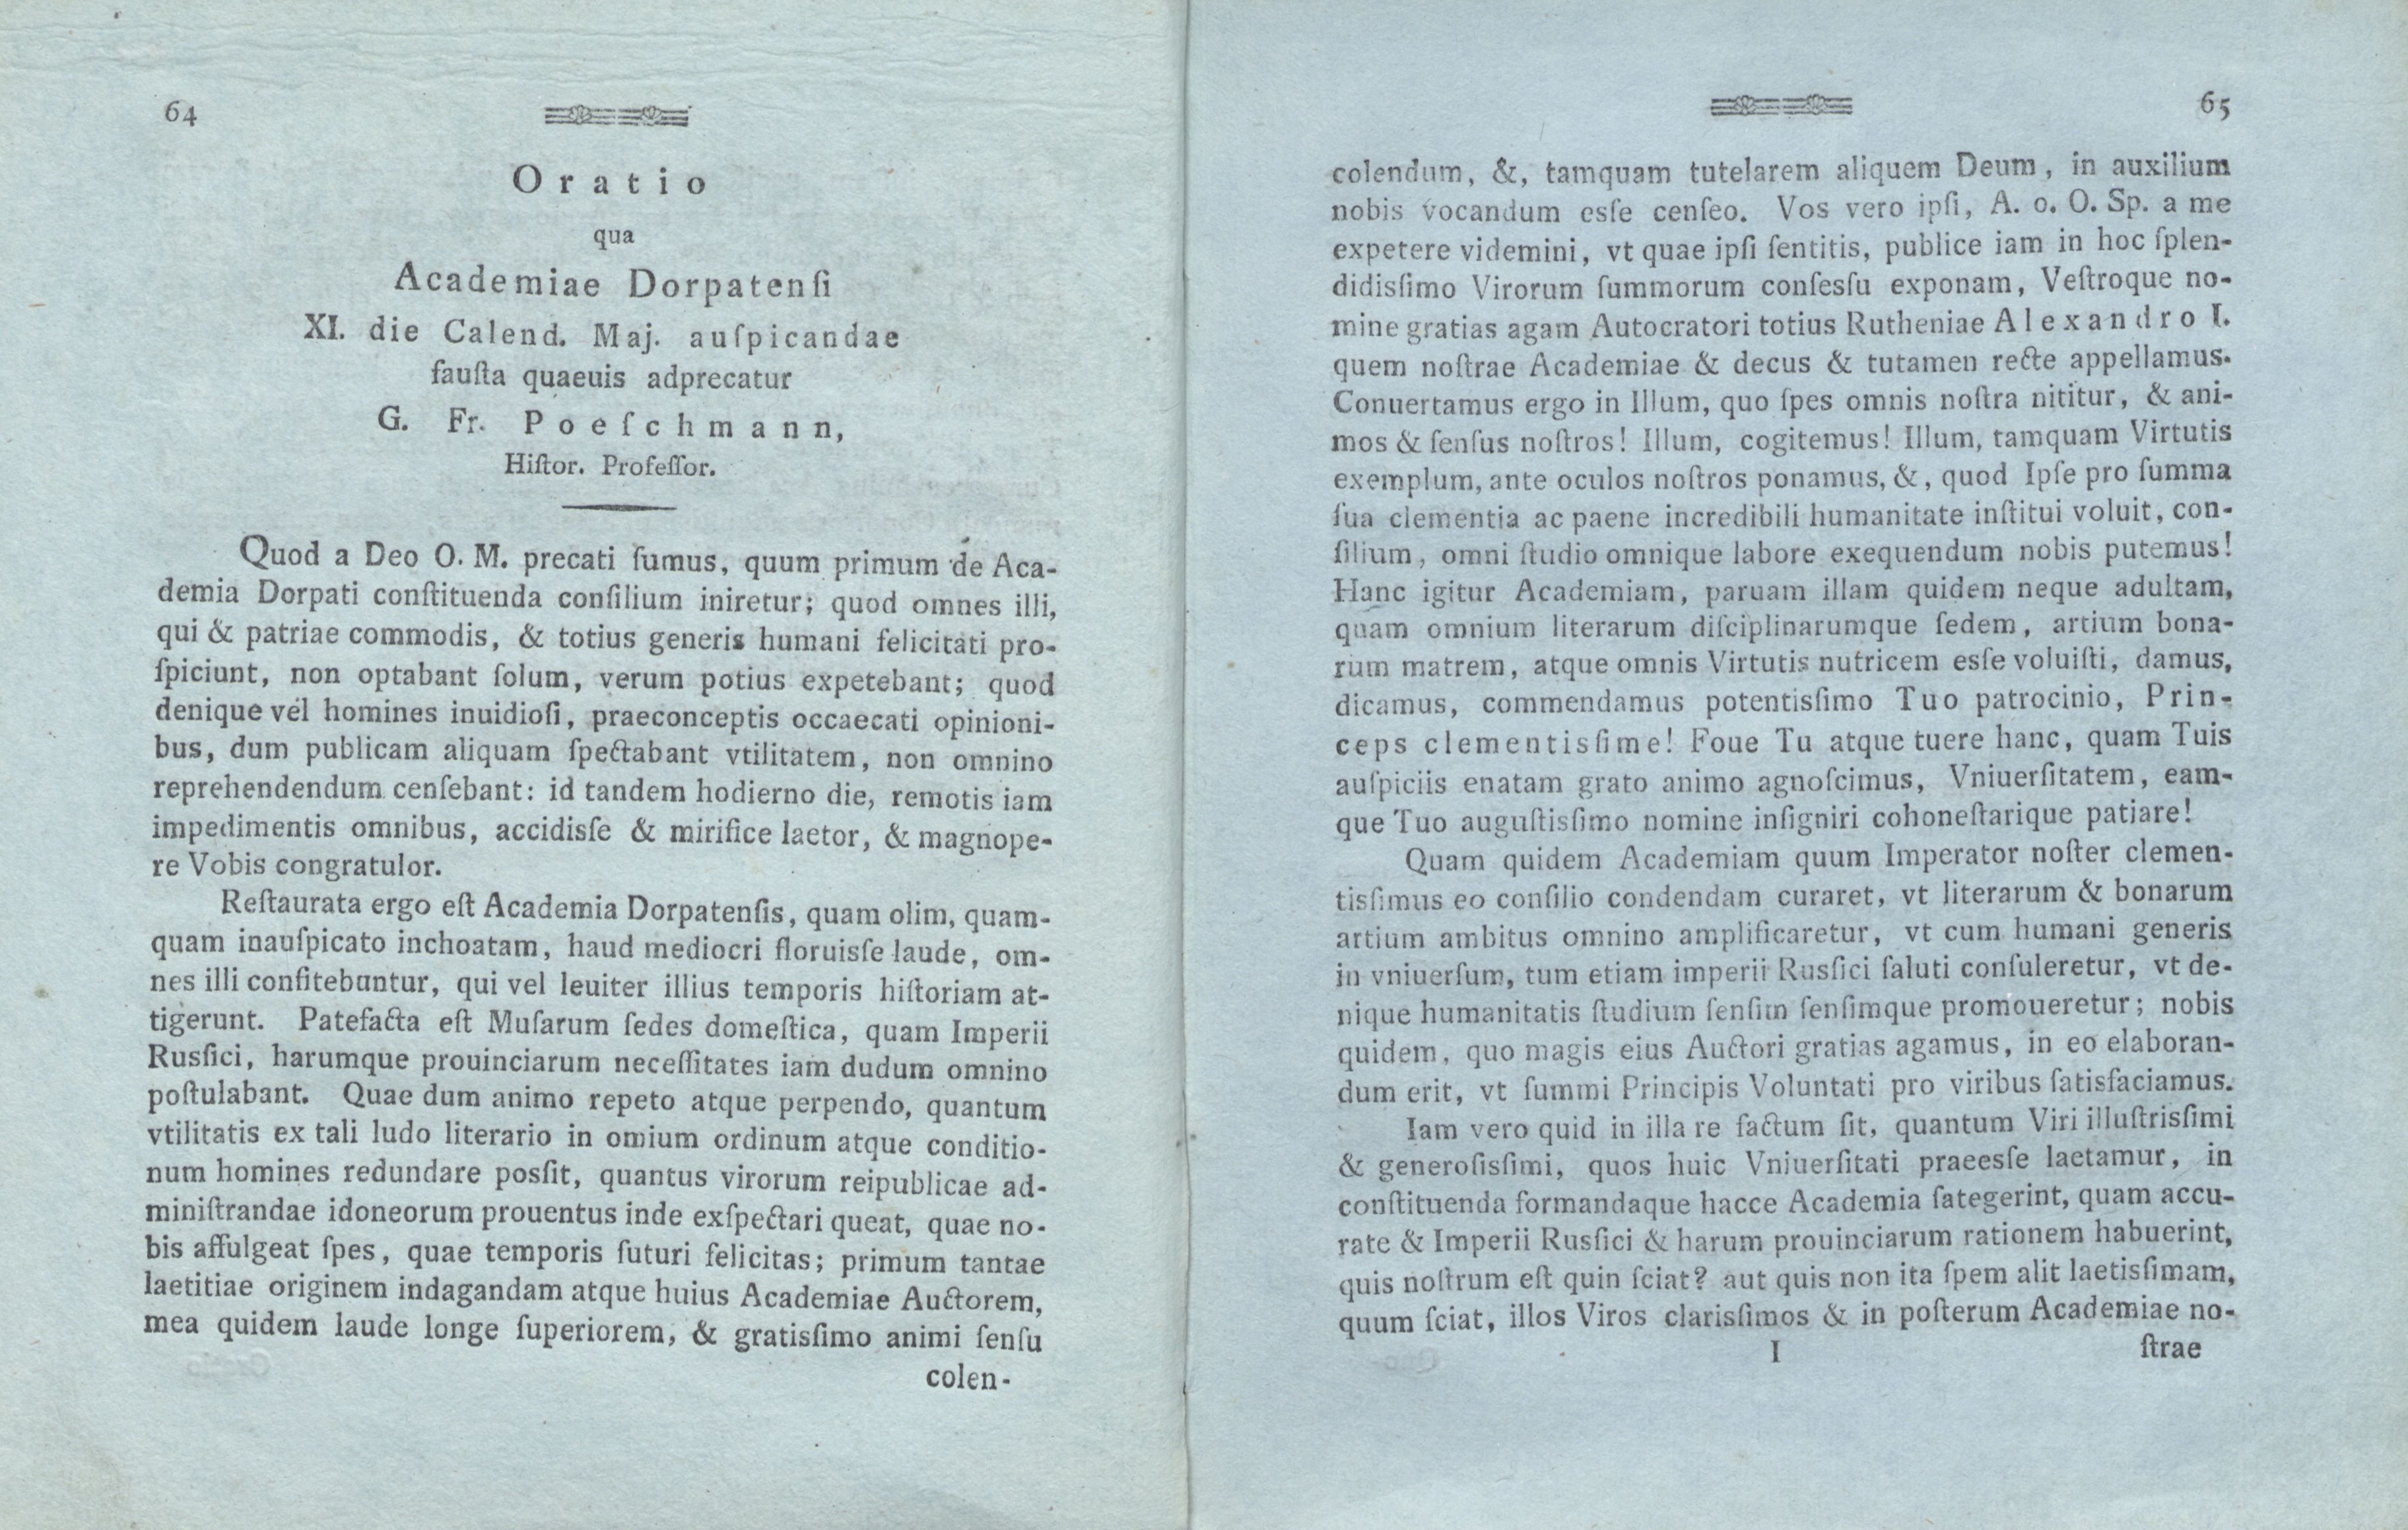 Oratio qua Academiae Dorpatensi (1802) | 1. (64-65) Põhitekst